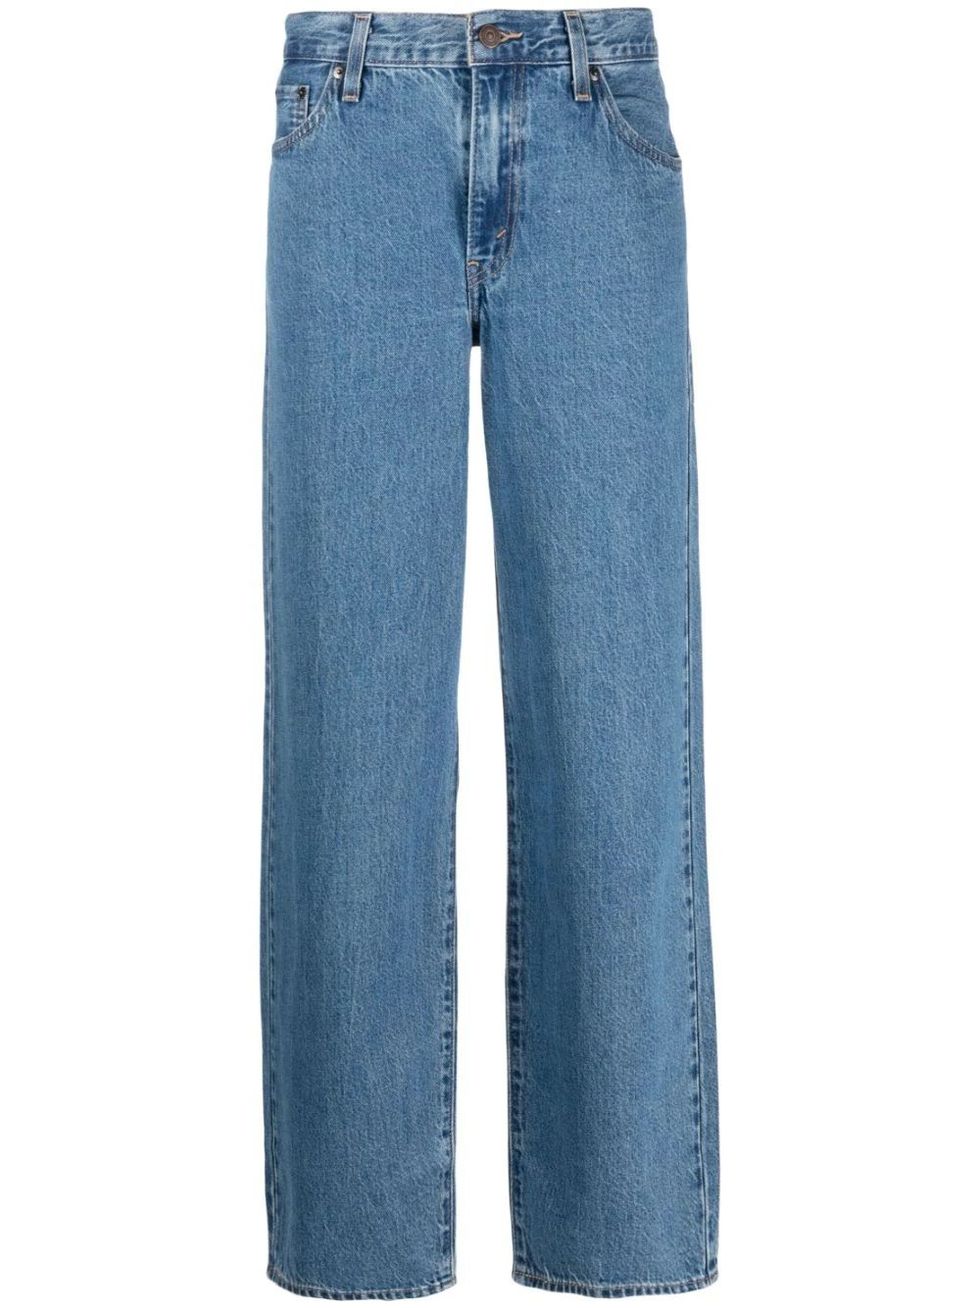 Jeans rectos de cintura alta con estampado floral, pantalones de mezclilla  sueltos de talle alto con bolsillos cortados, jeans y ropa de mezclilla par